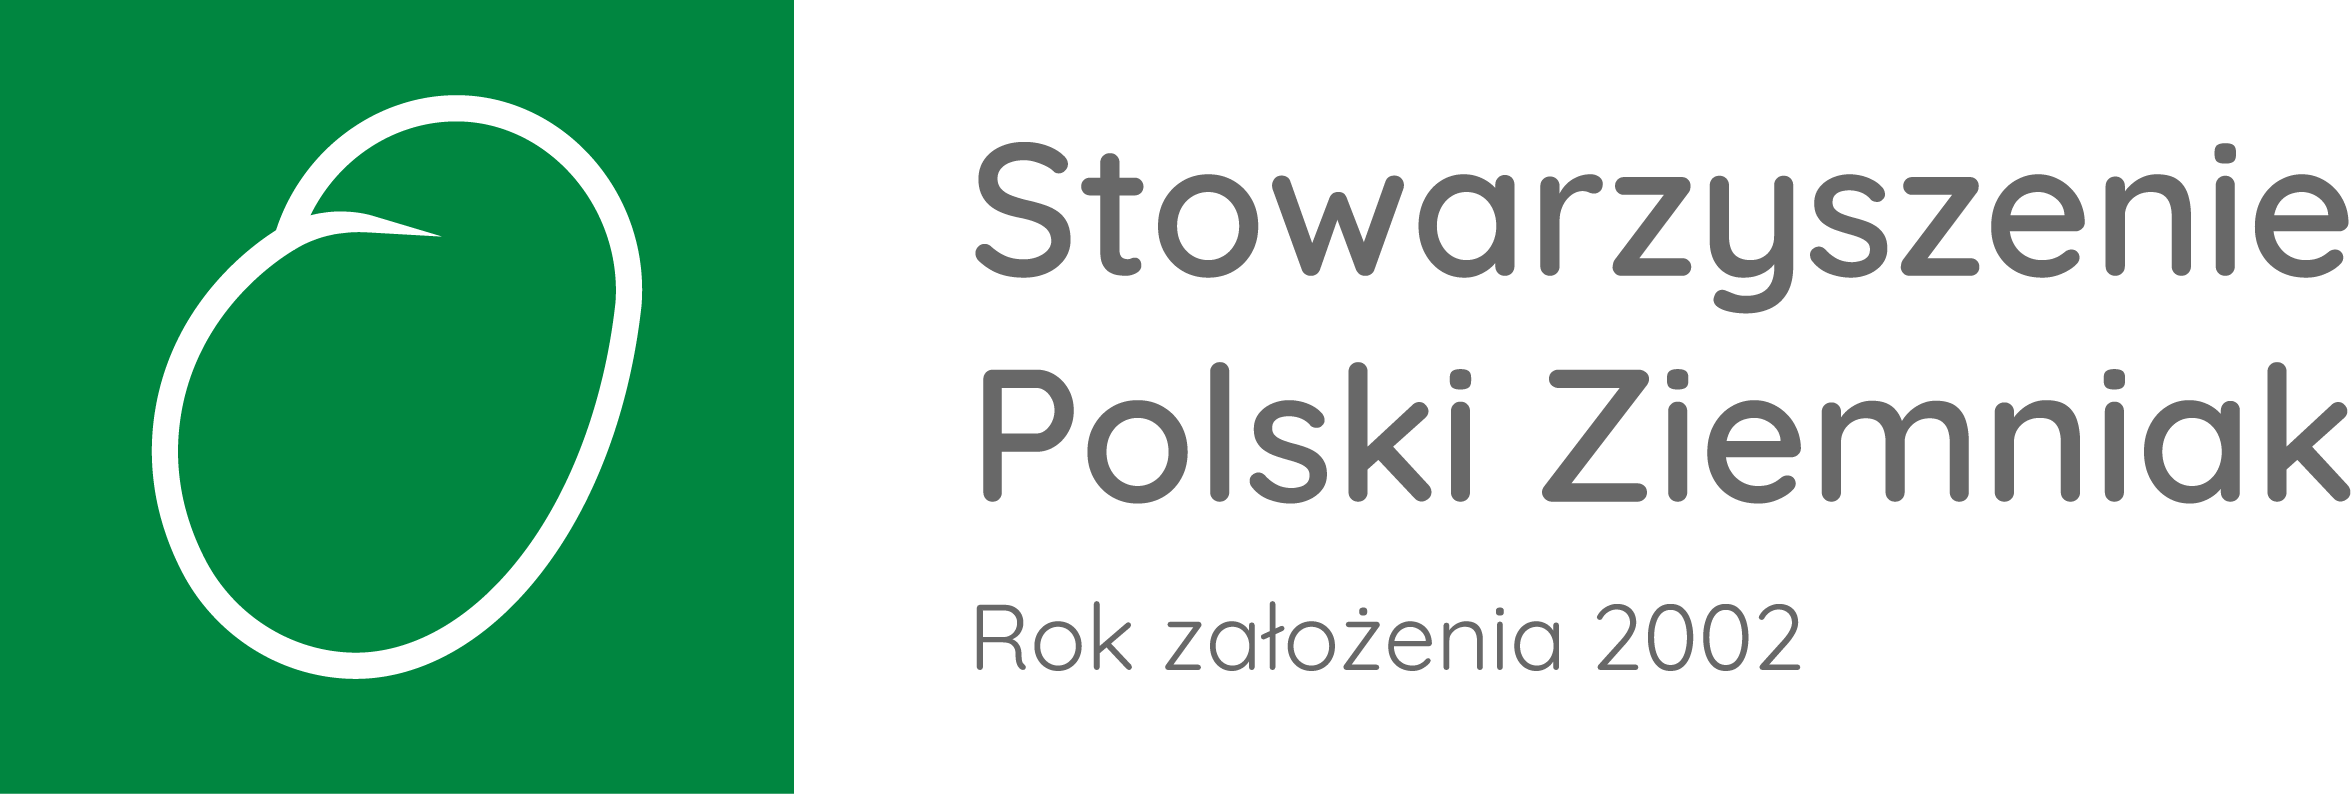 stowarzyszenie polski ziemniak 